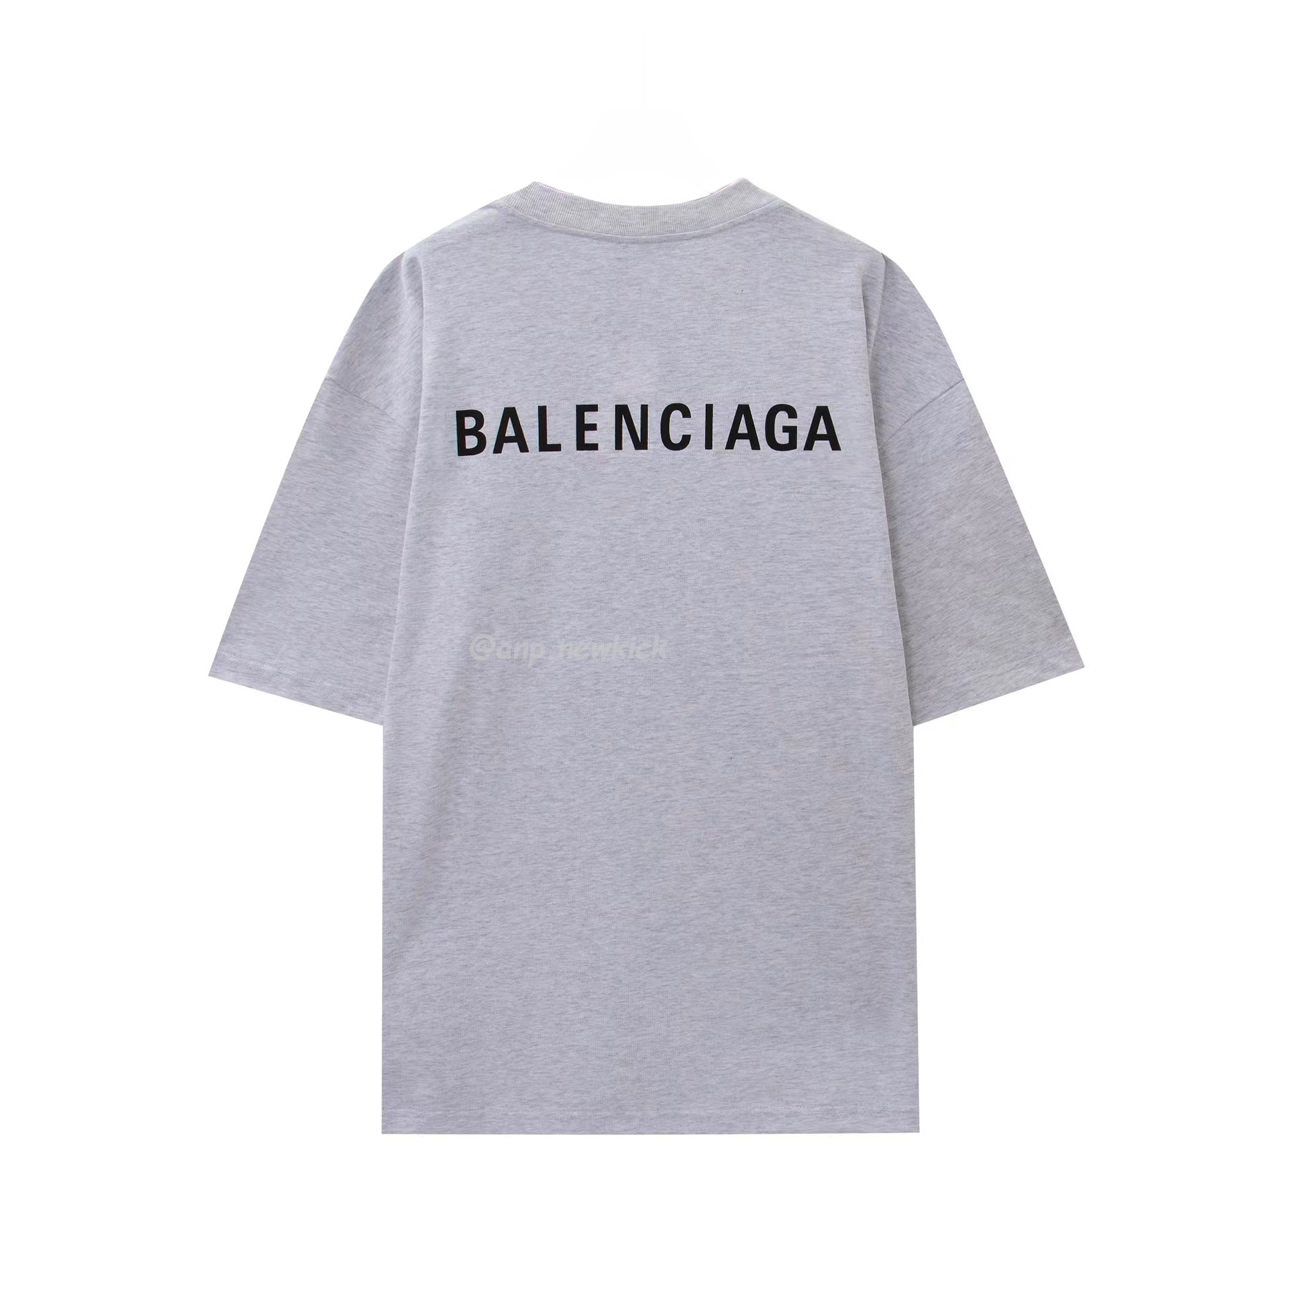 Balenciaga logo T-Shirt Grey